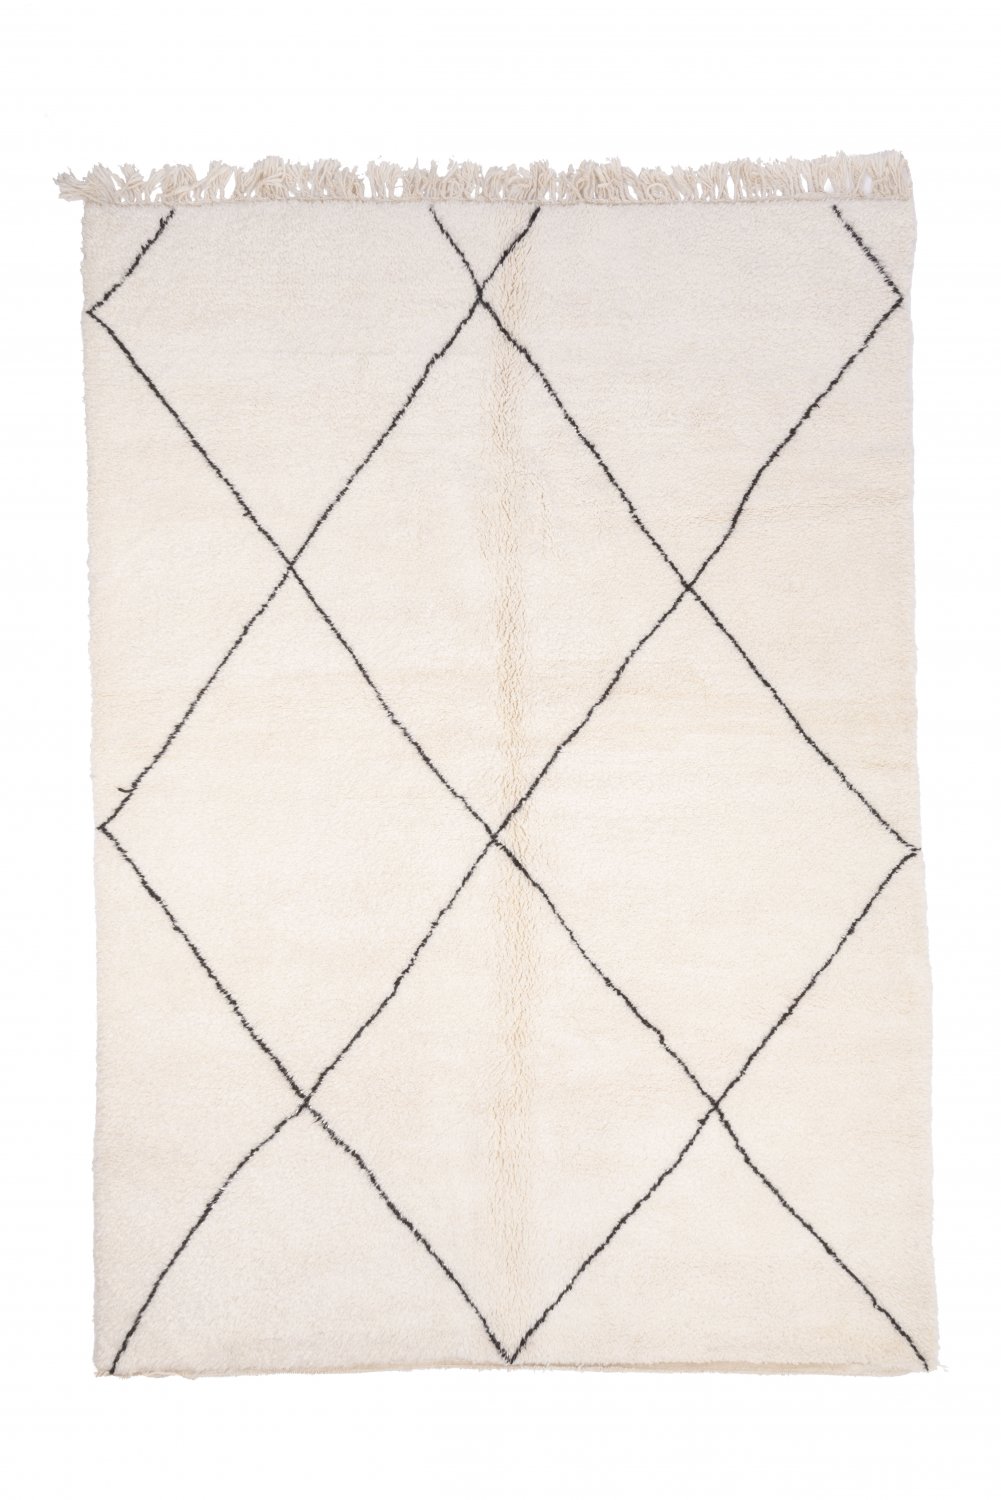 Marokkolainen Kilim matto Beni Ouarain 305 x 215 cm